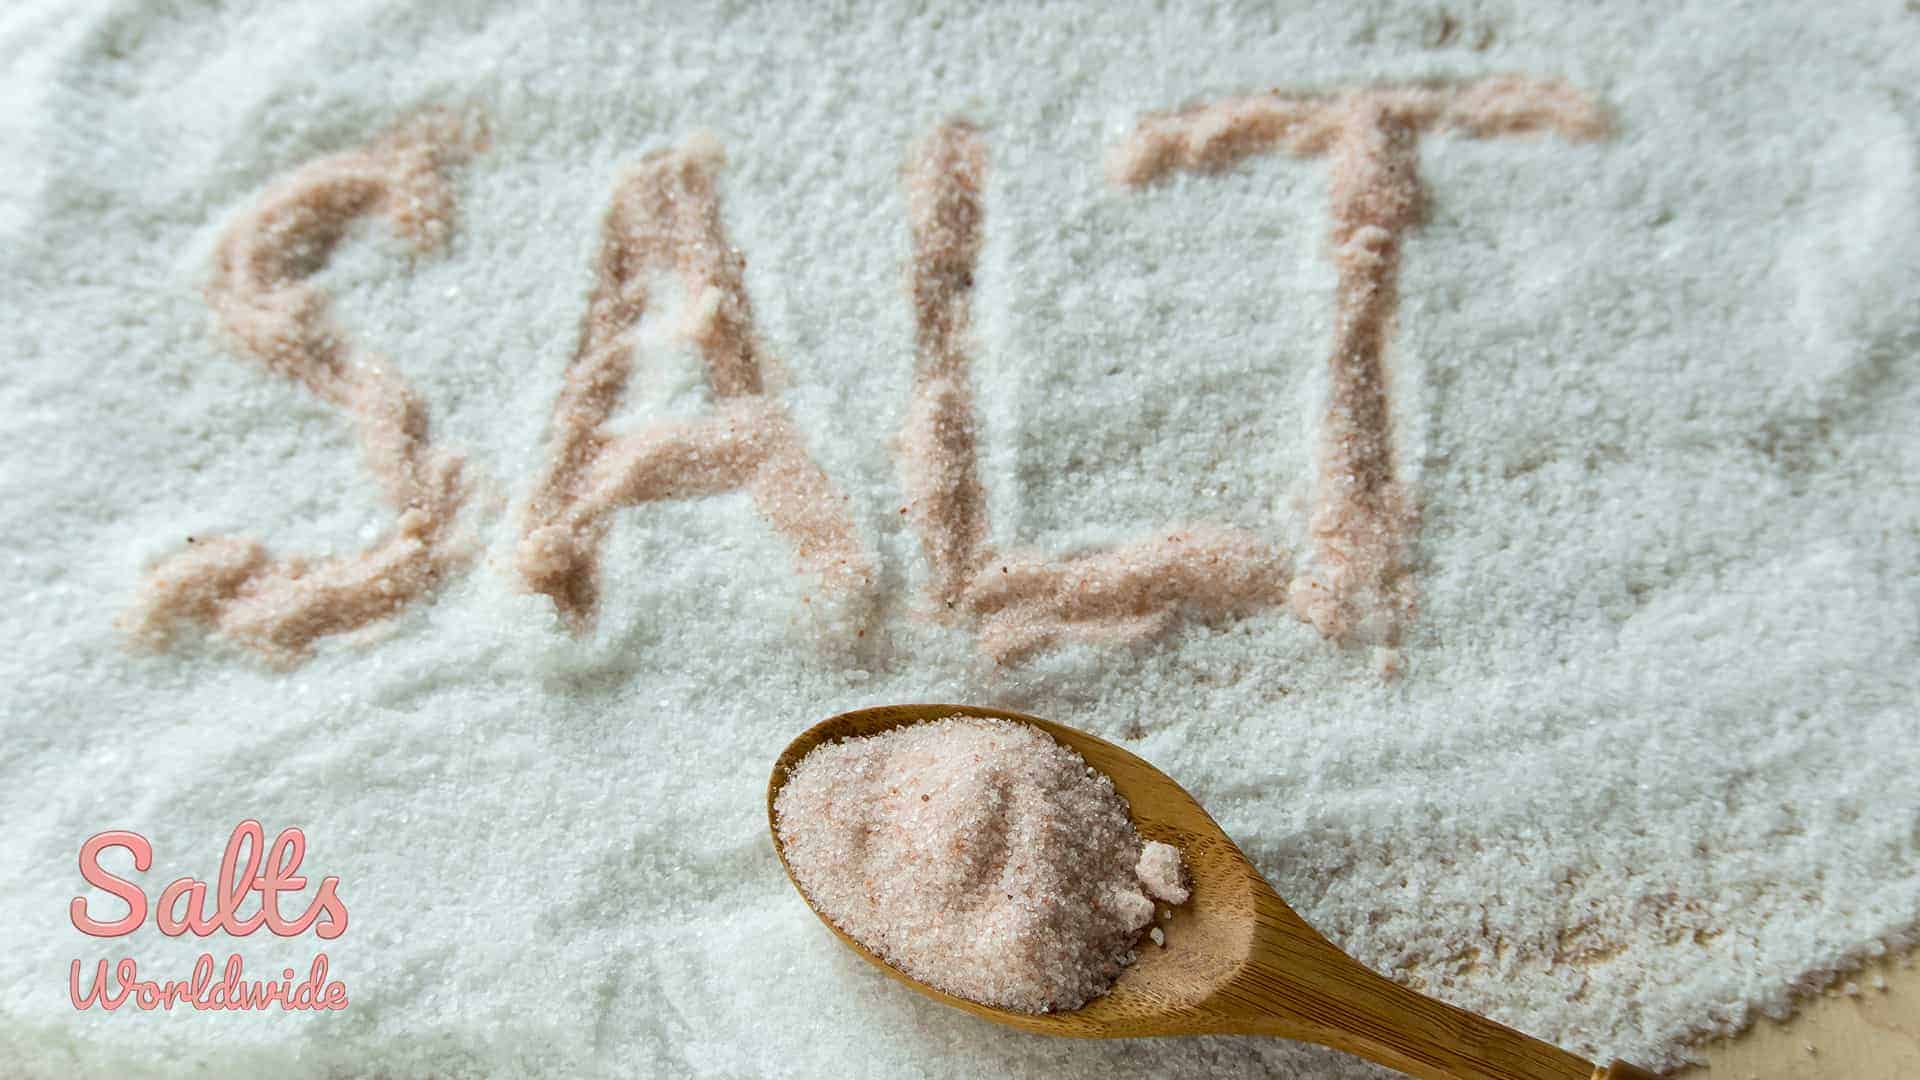 Pink salt vs. Regular salt - Regular salt with Pink salt and Spoon